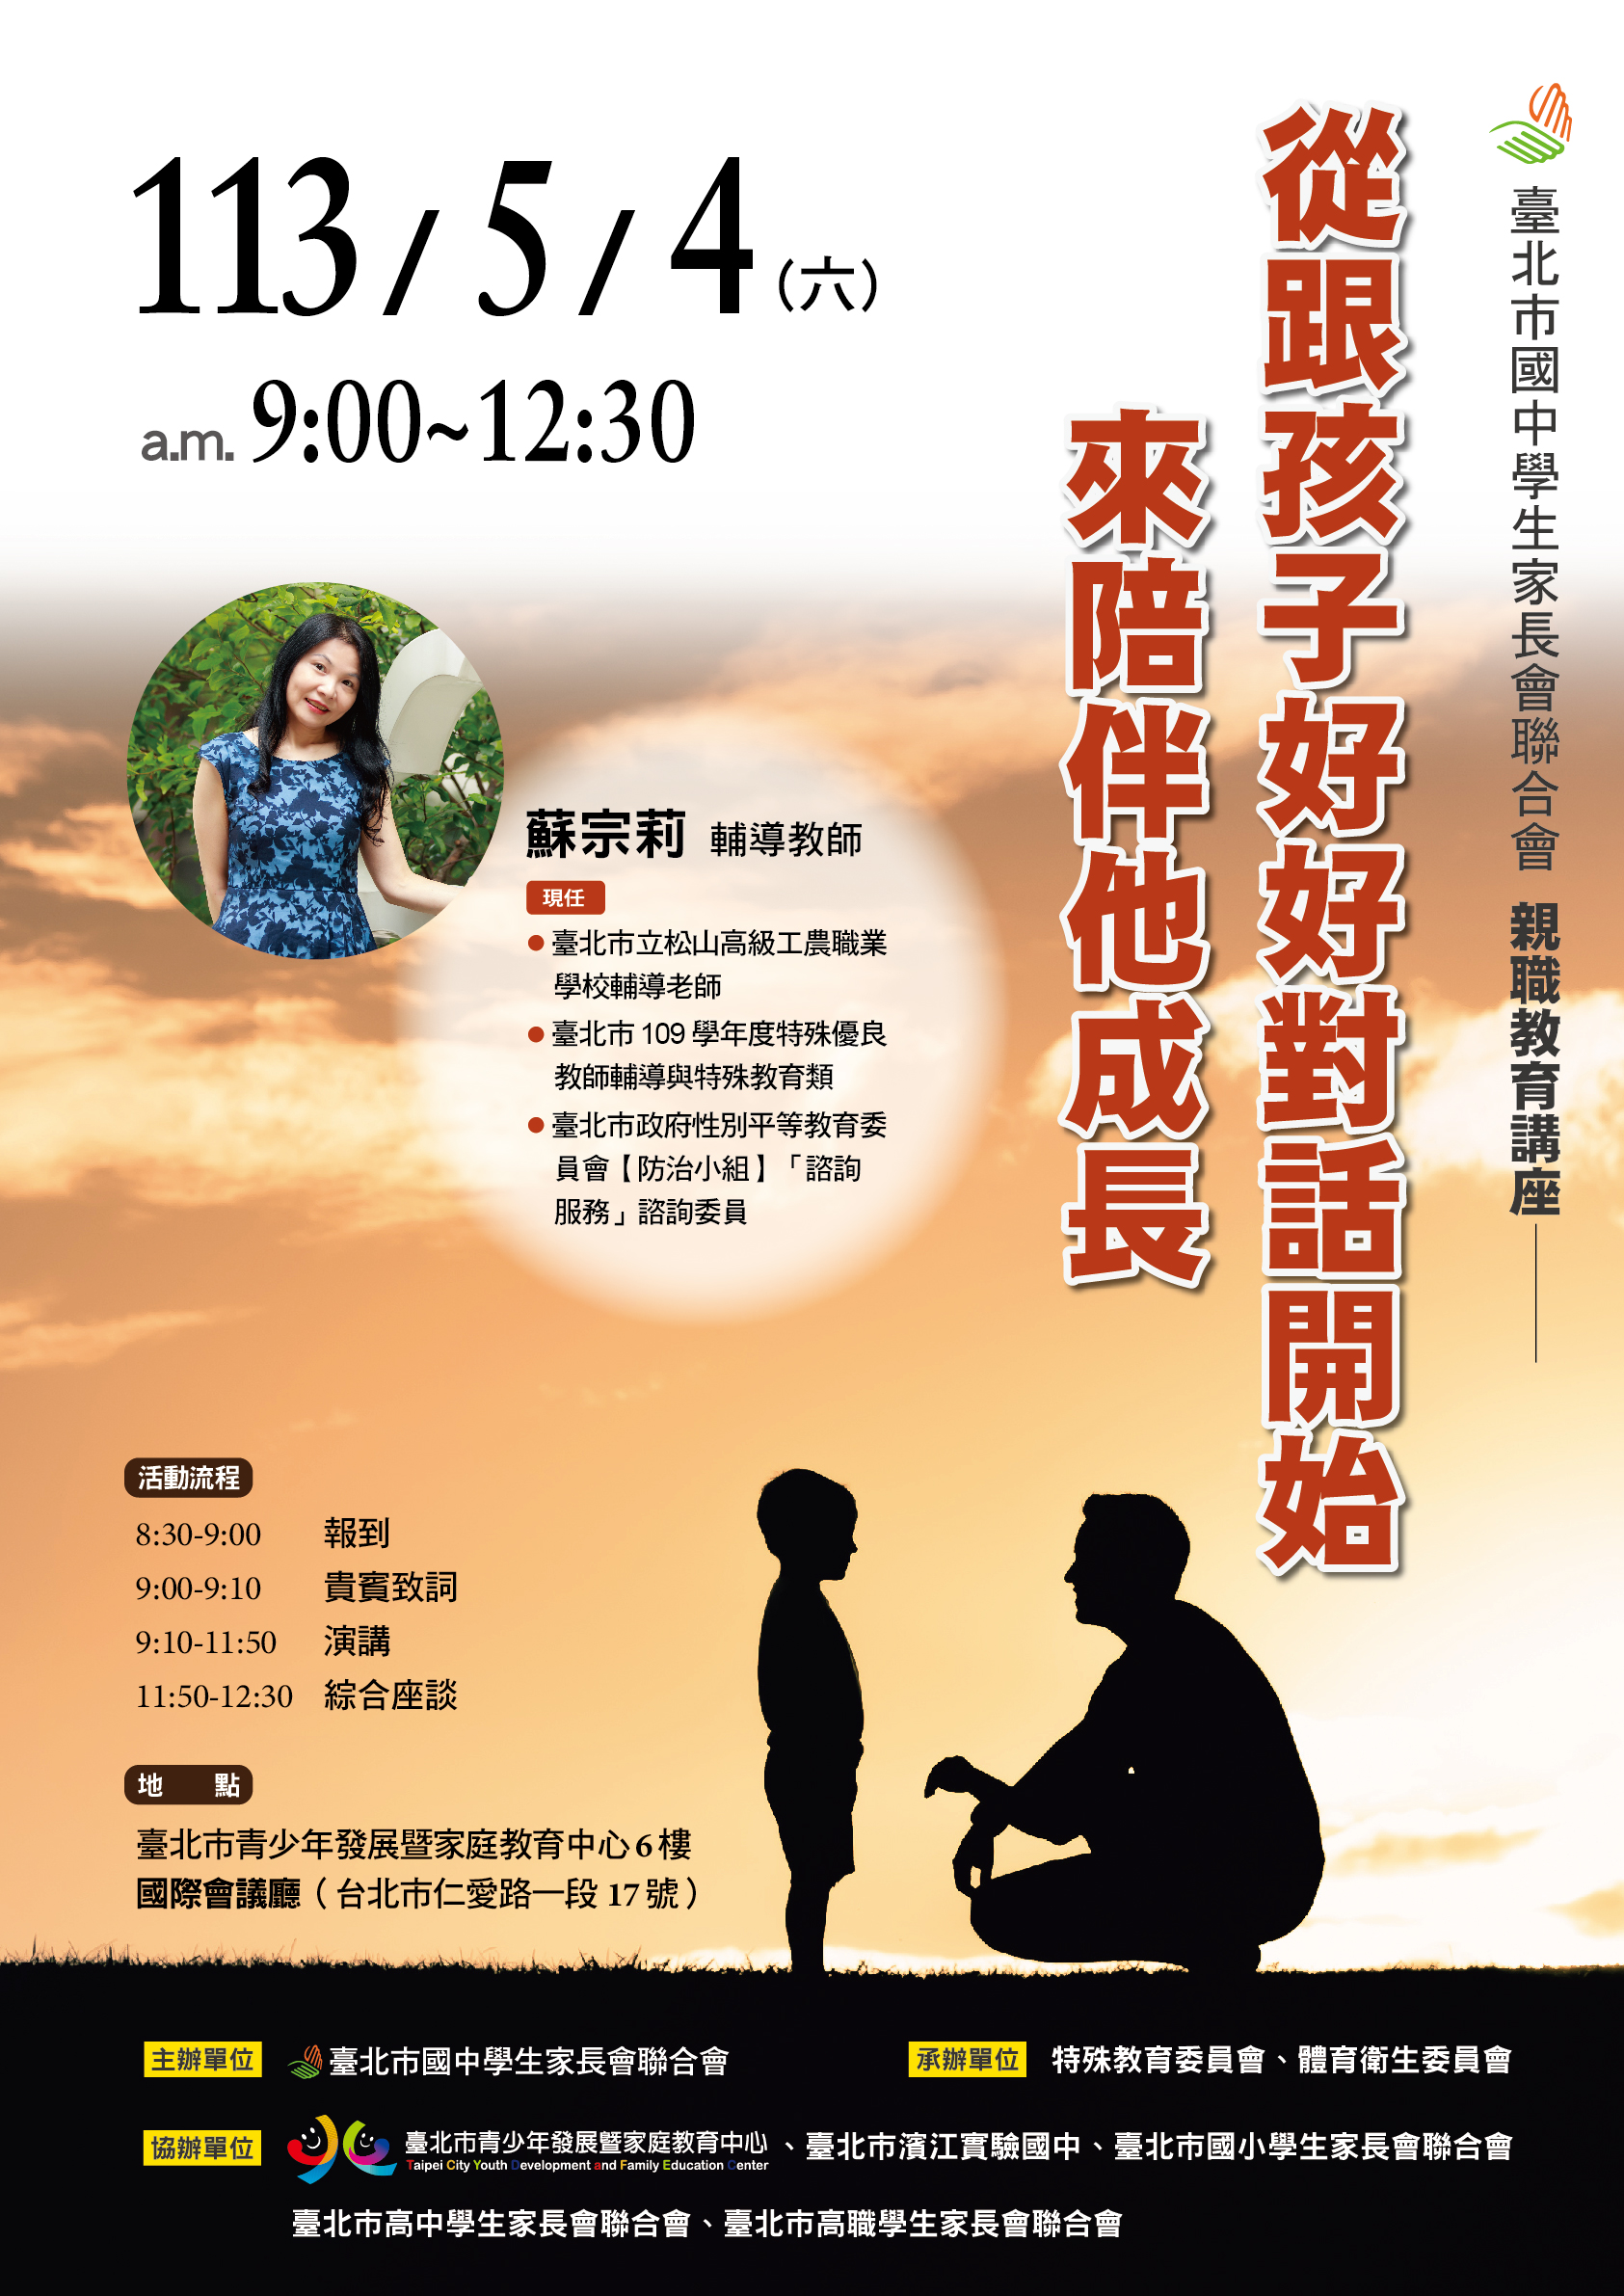 臺北市國中學生家長會聯合會於5月4日（星期六）辦理「親職教育講座 從跟孩子好好對話開始來陪伴他成長」